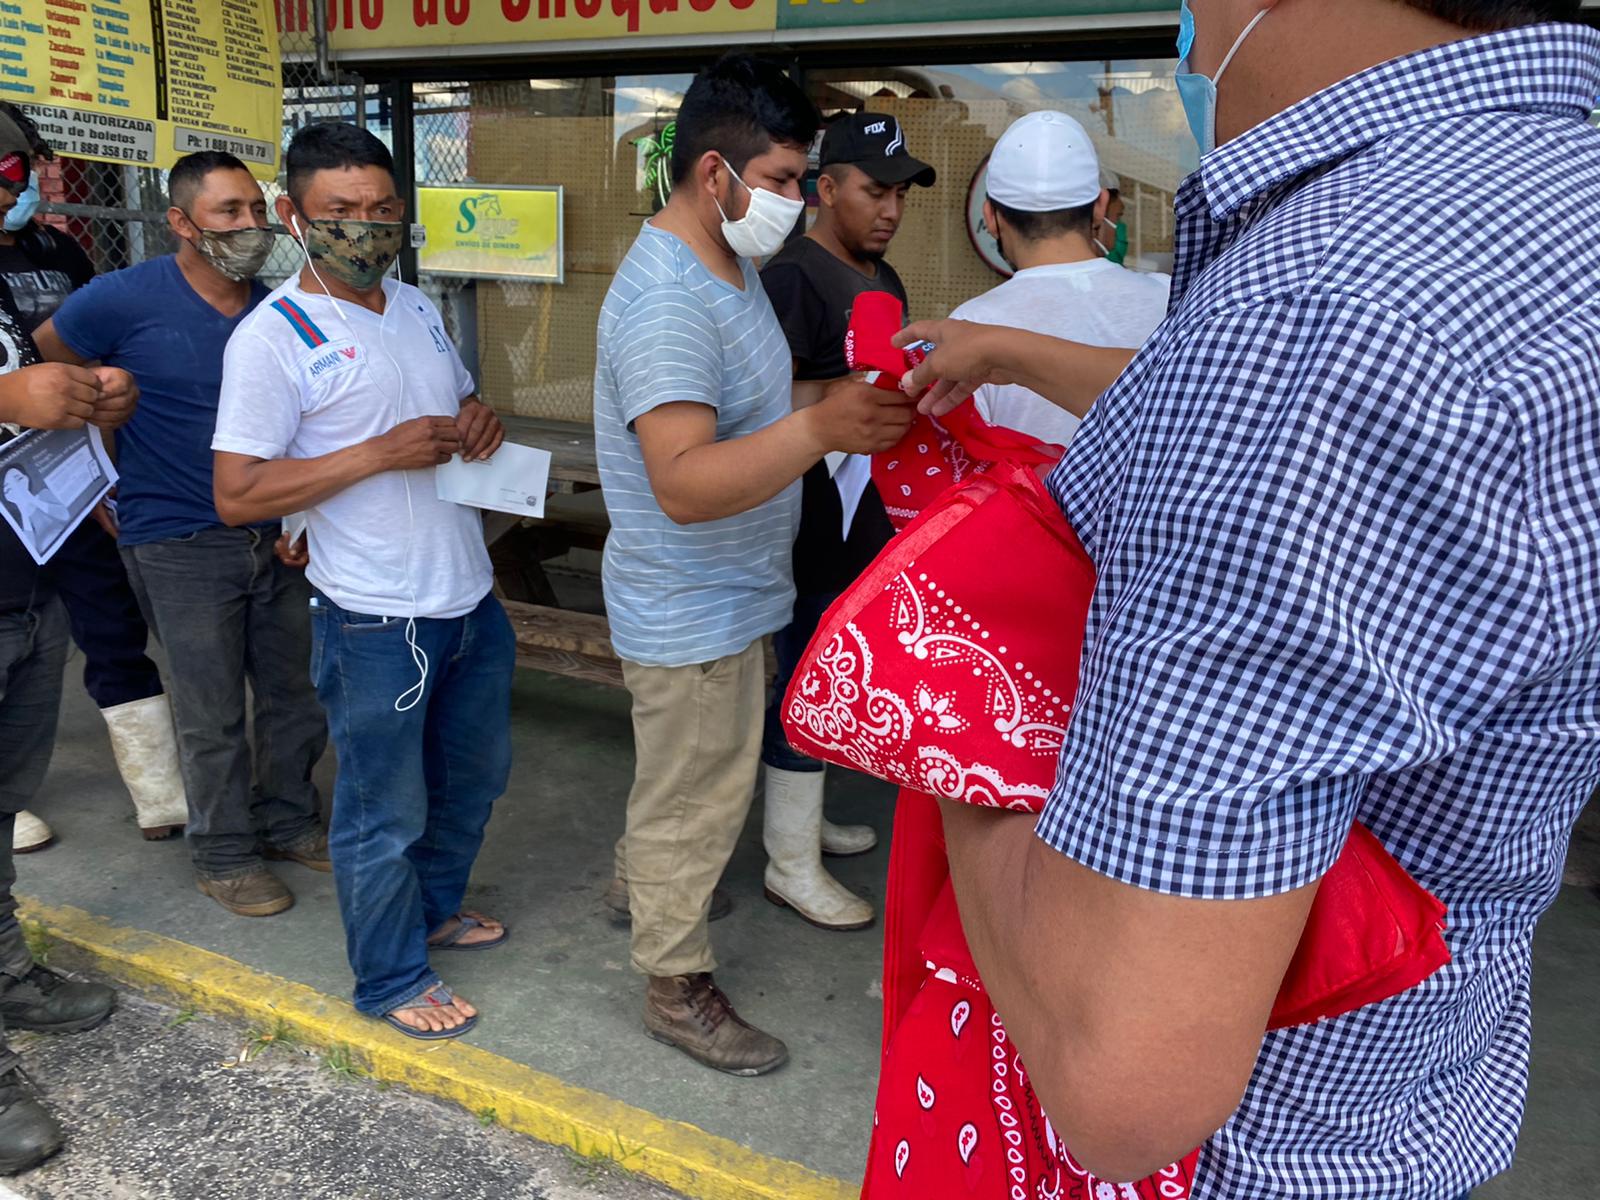 Guatemaltecos de Indiantown que laboran en fincas agrícolas hacen fila para recibir pañuelos y mascarillas para prevenir el contagio del covid-19. (Foto: Cortesía)